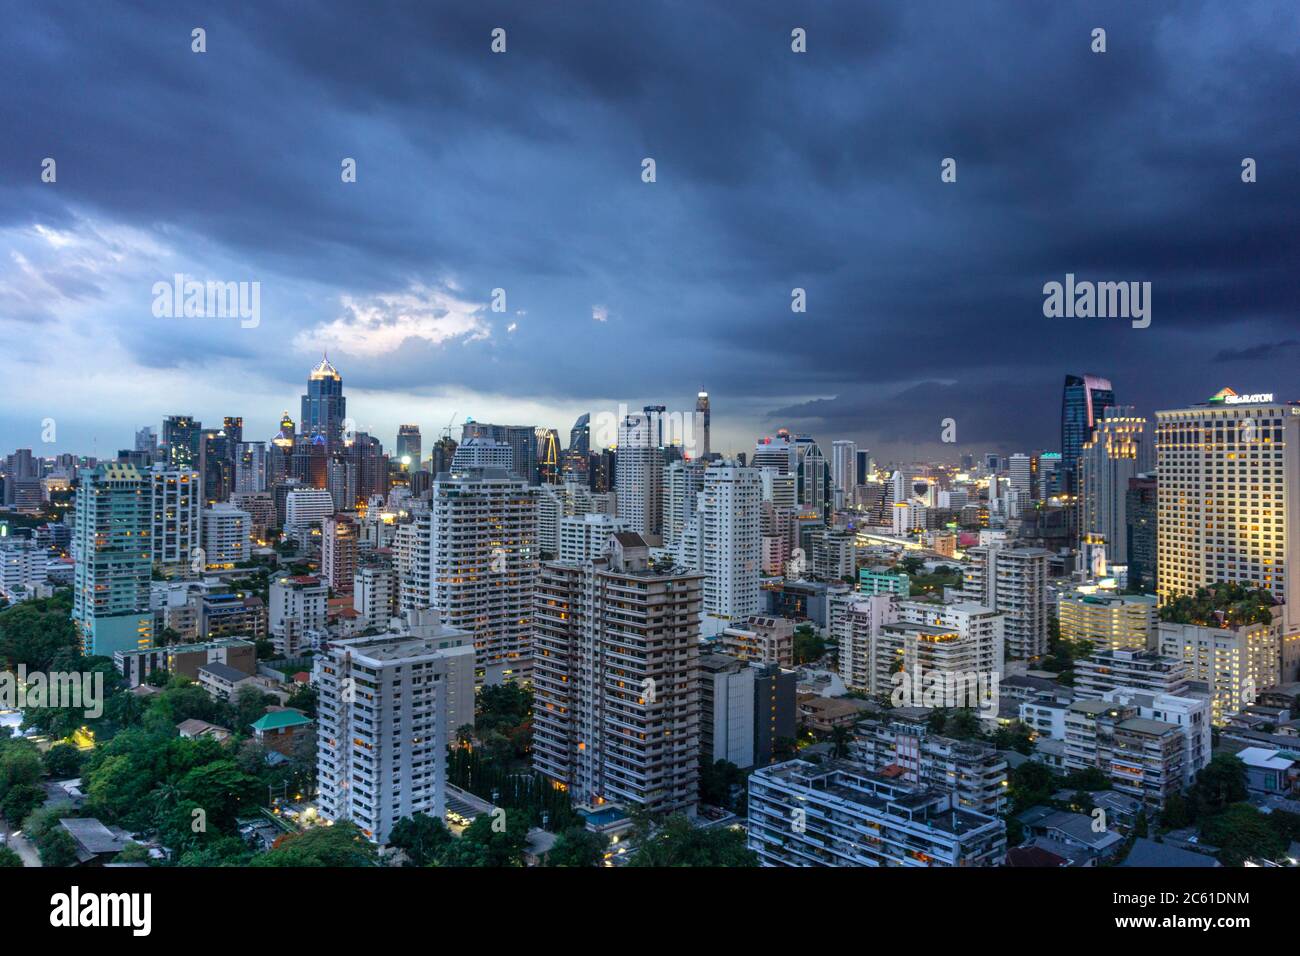 Asien, Thailand, Bankgok. Während der Regenzeit Monsun überwölbt sich der starke Regen über dem zentralen Geschäftsviertel um Lumpini / Ratchathewi Stockfoto